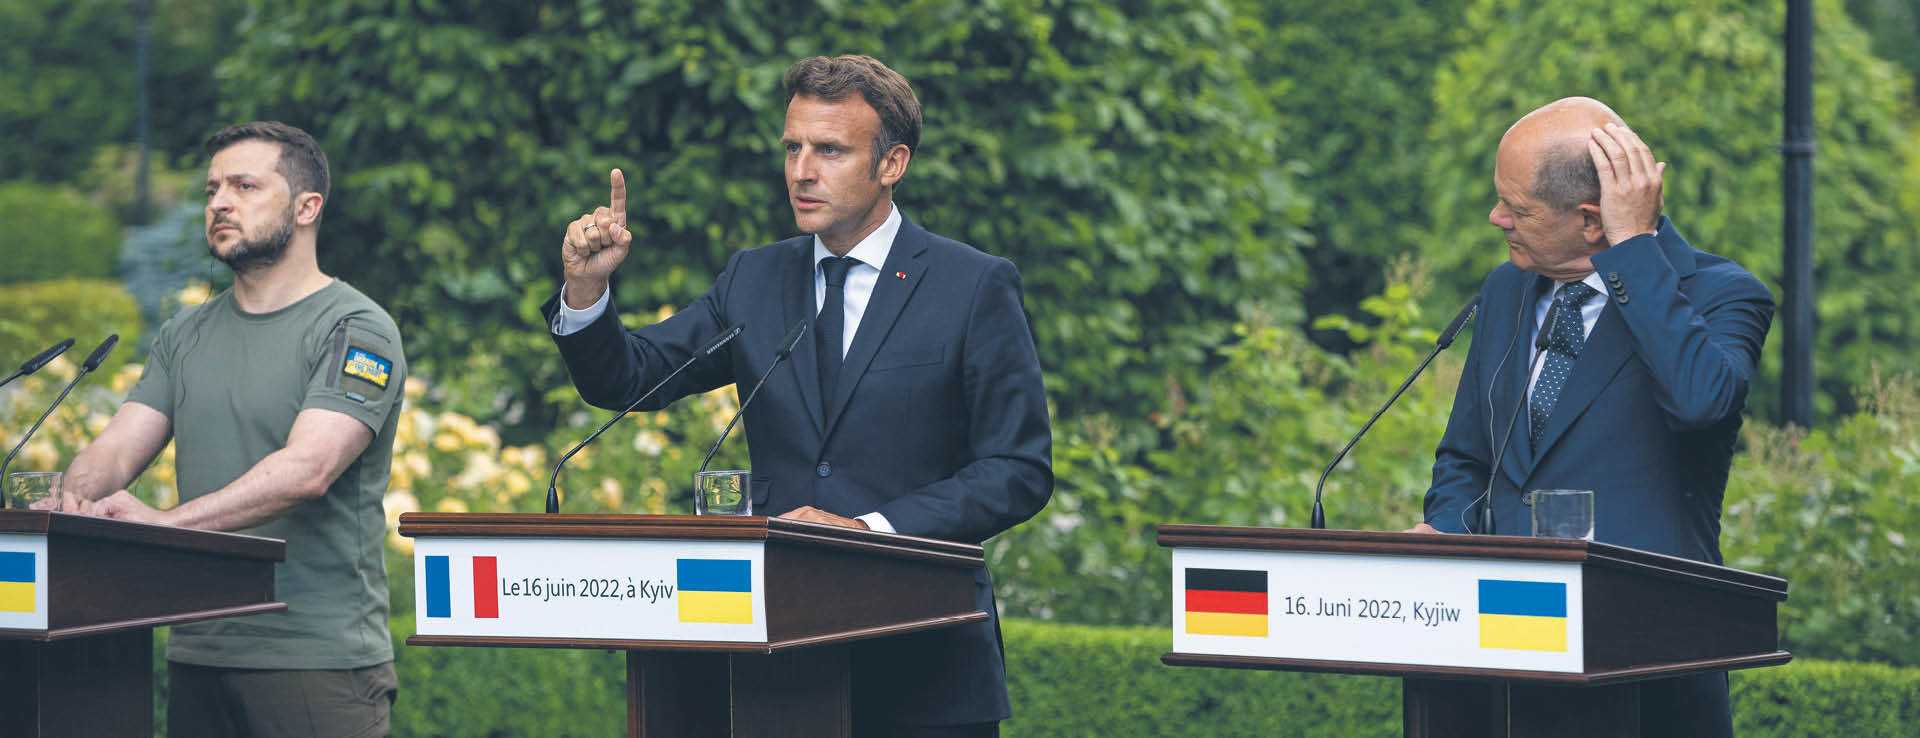 Poparcie dla statusu kandydata podczas wizyty w Kijowie ogłosił prezydent Francji i premierzy Niemiec i Włoch